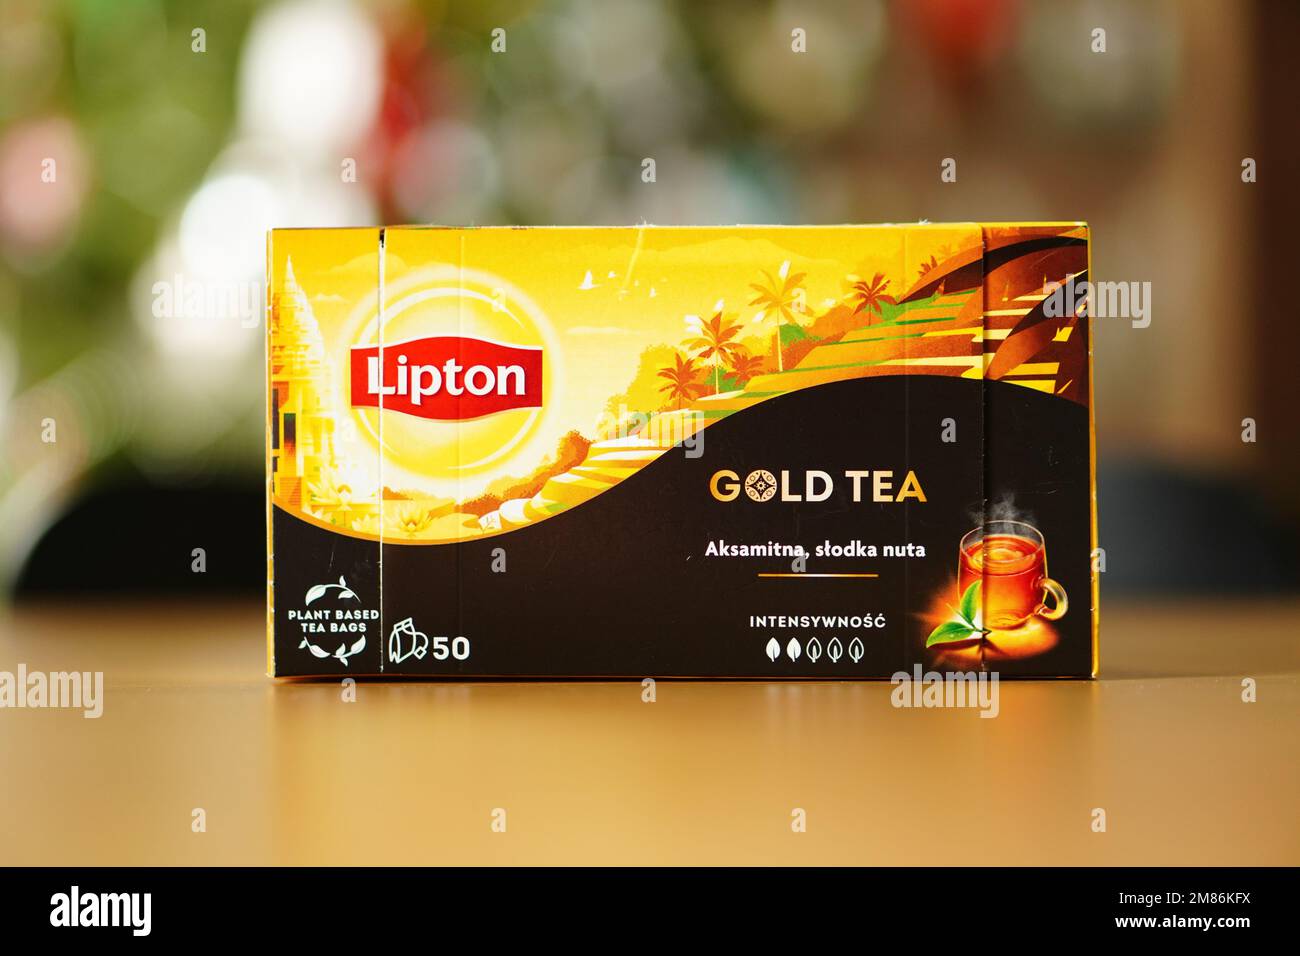 Un foyer doux d'une boîte d'un thé d'or de marque Lipton sur une table Banque D'Images